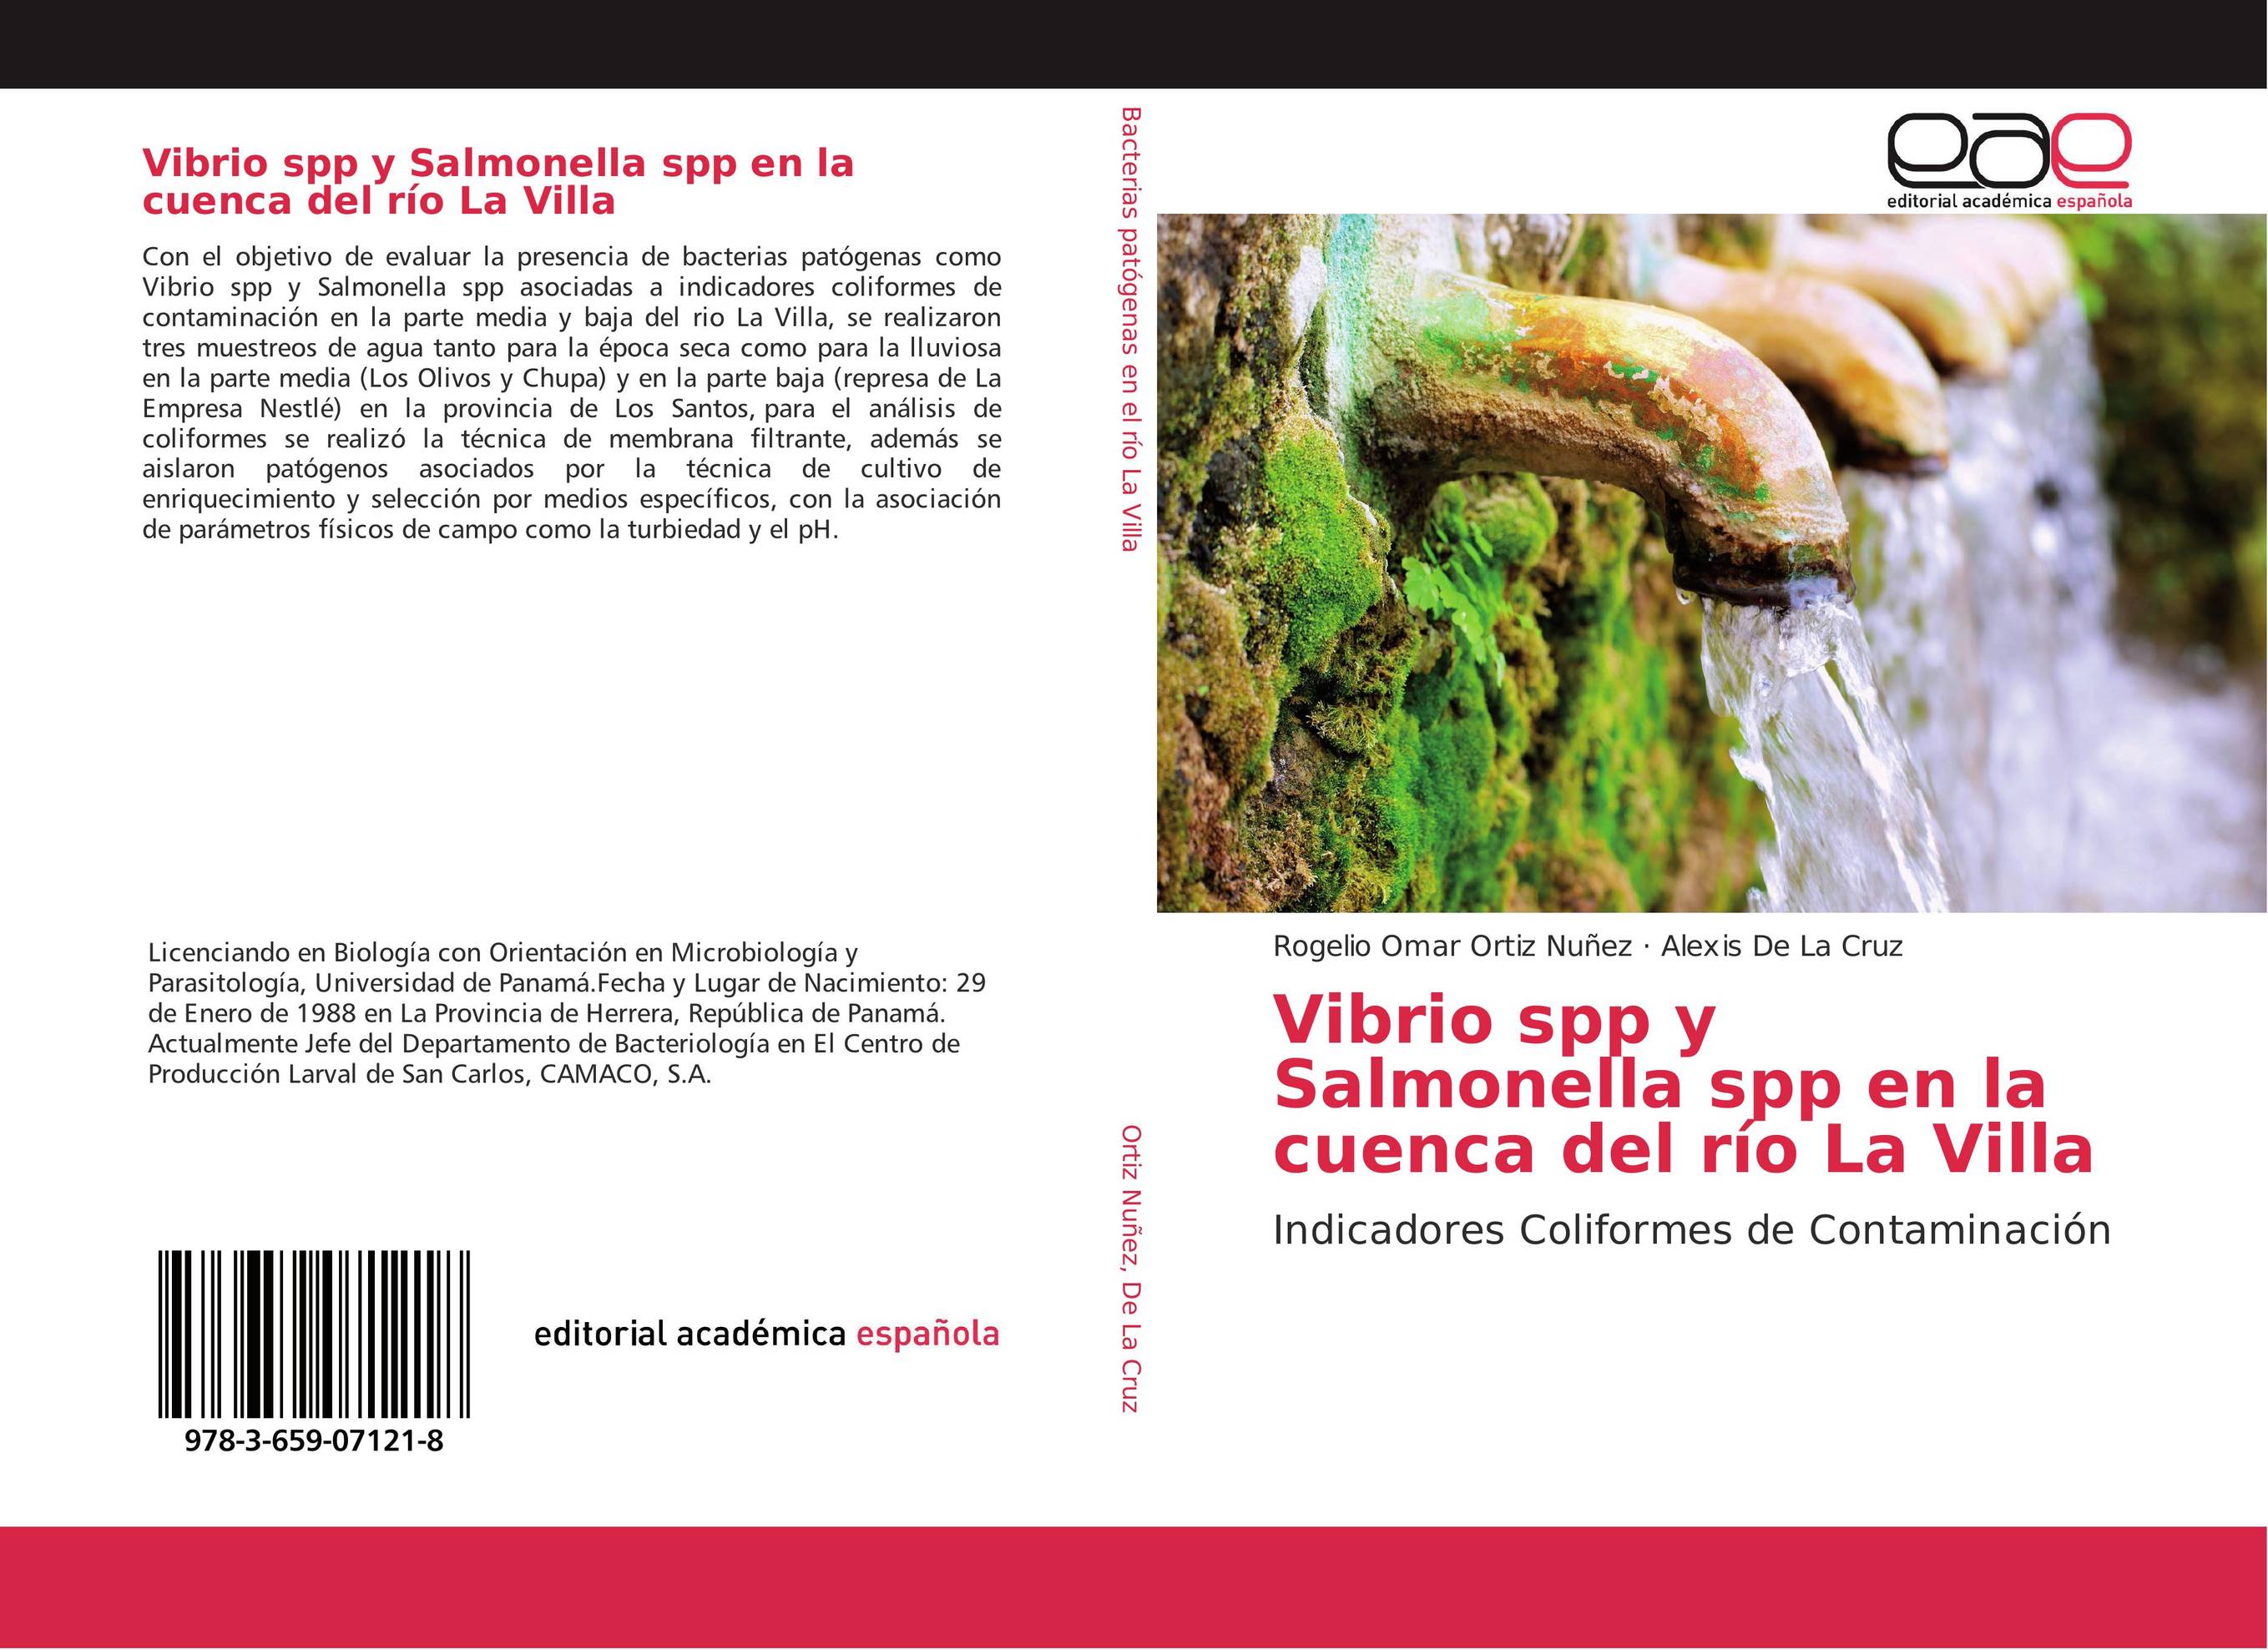 Vibrio spp y Salmonella spp en la cuenca del río La Villa